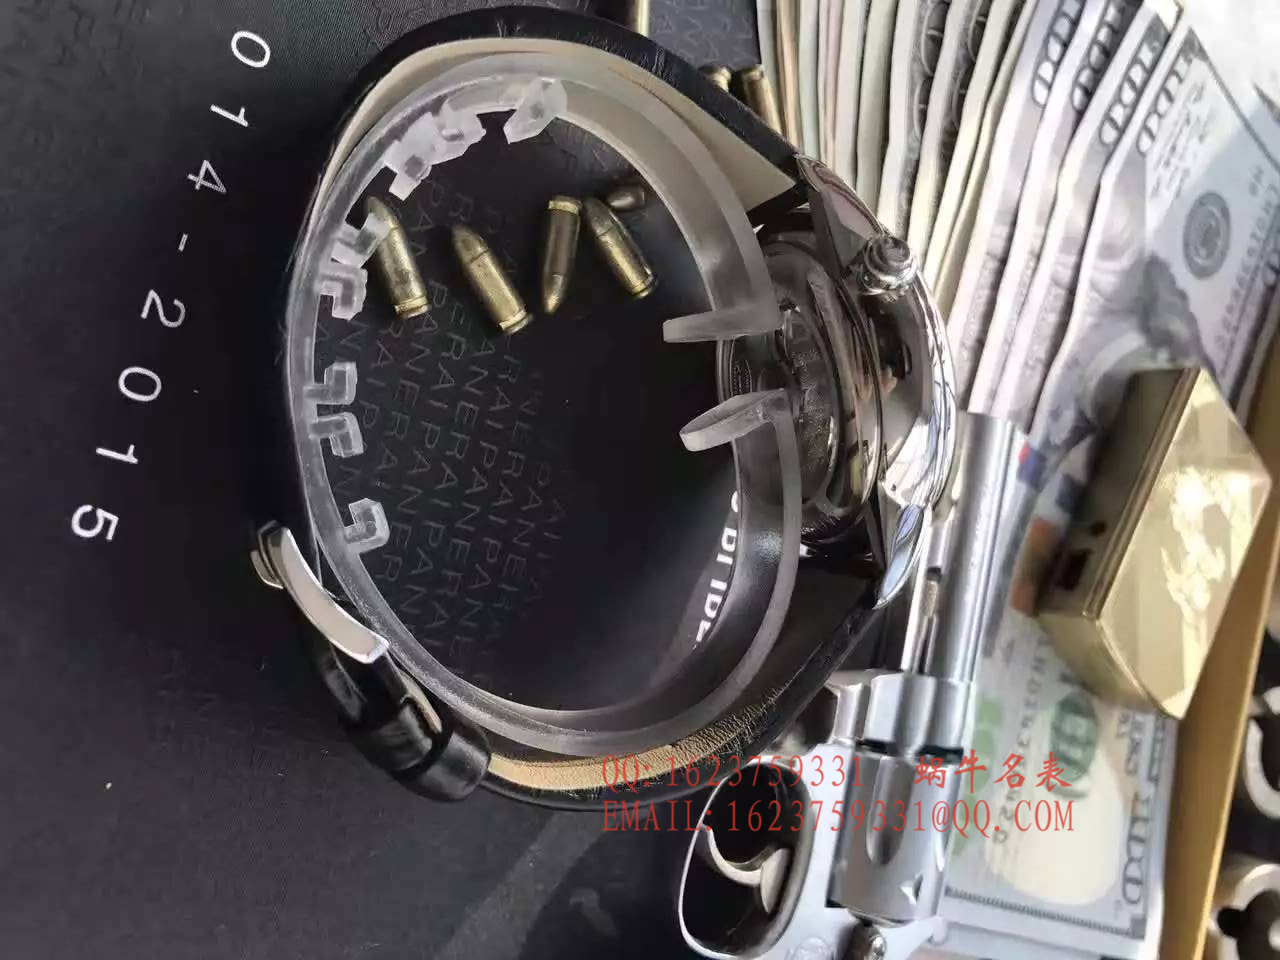 【实拍图鉴赏】KS厂1:1超A精仿手表之雅克德罗大秒针系列J006030270手表 / 雅克德罗YK01